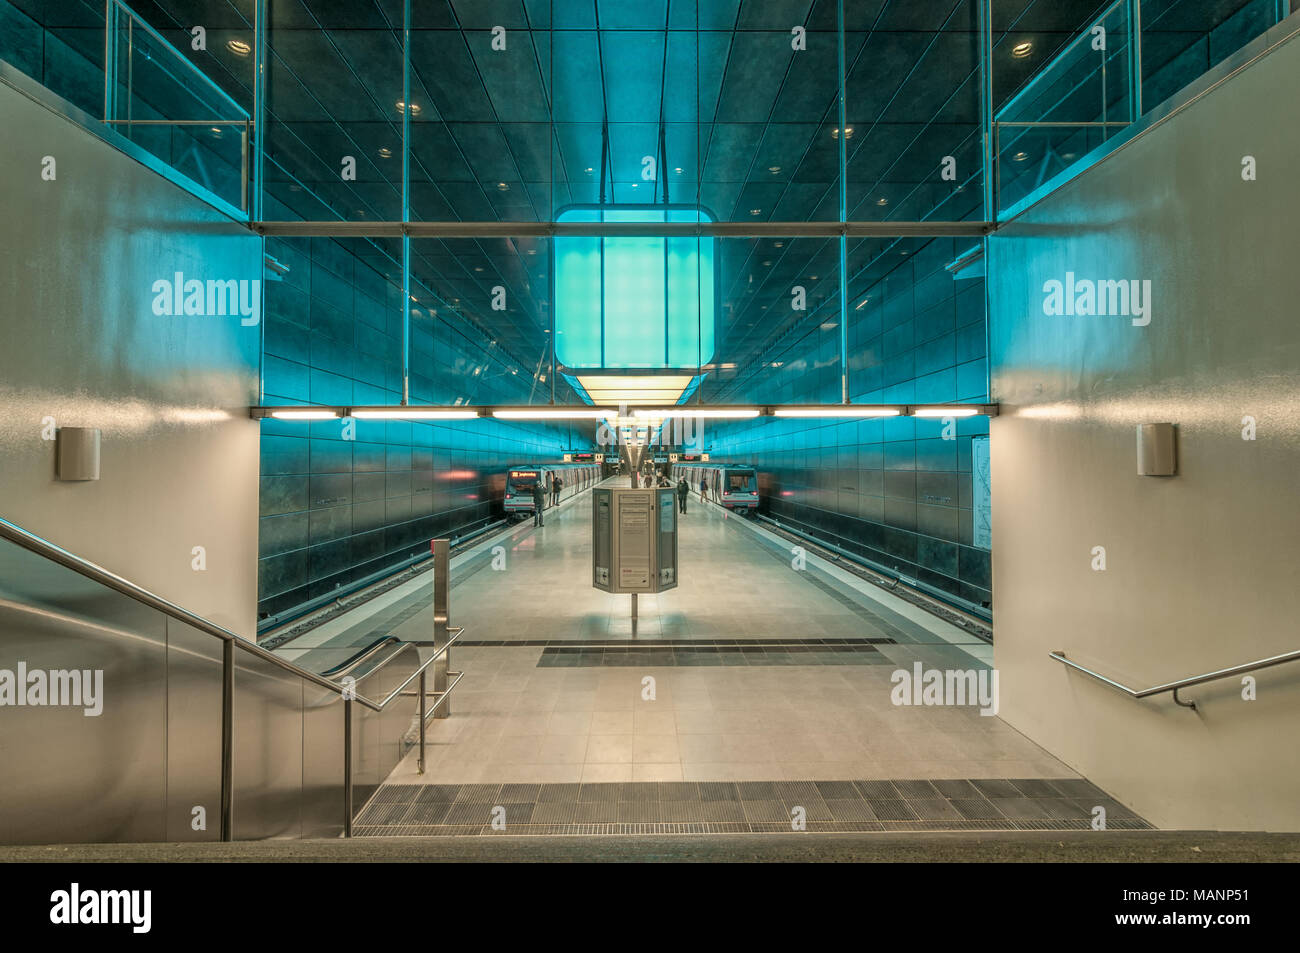 Hambourg, Allemagne - Mars 09, 2014 : plate-forme de train station de métro de l'Université Hafencity à Hambourg, Allemagne. Banque D'Images